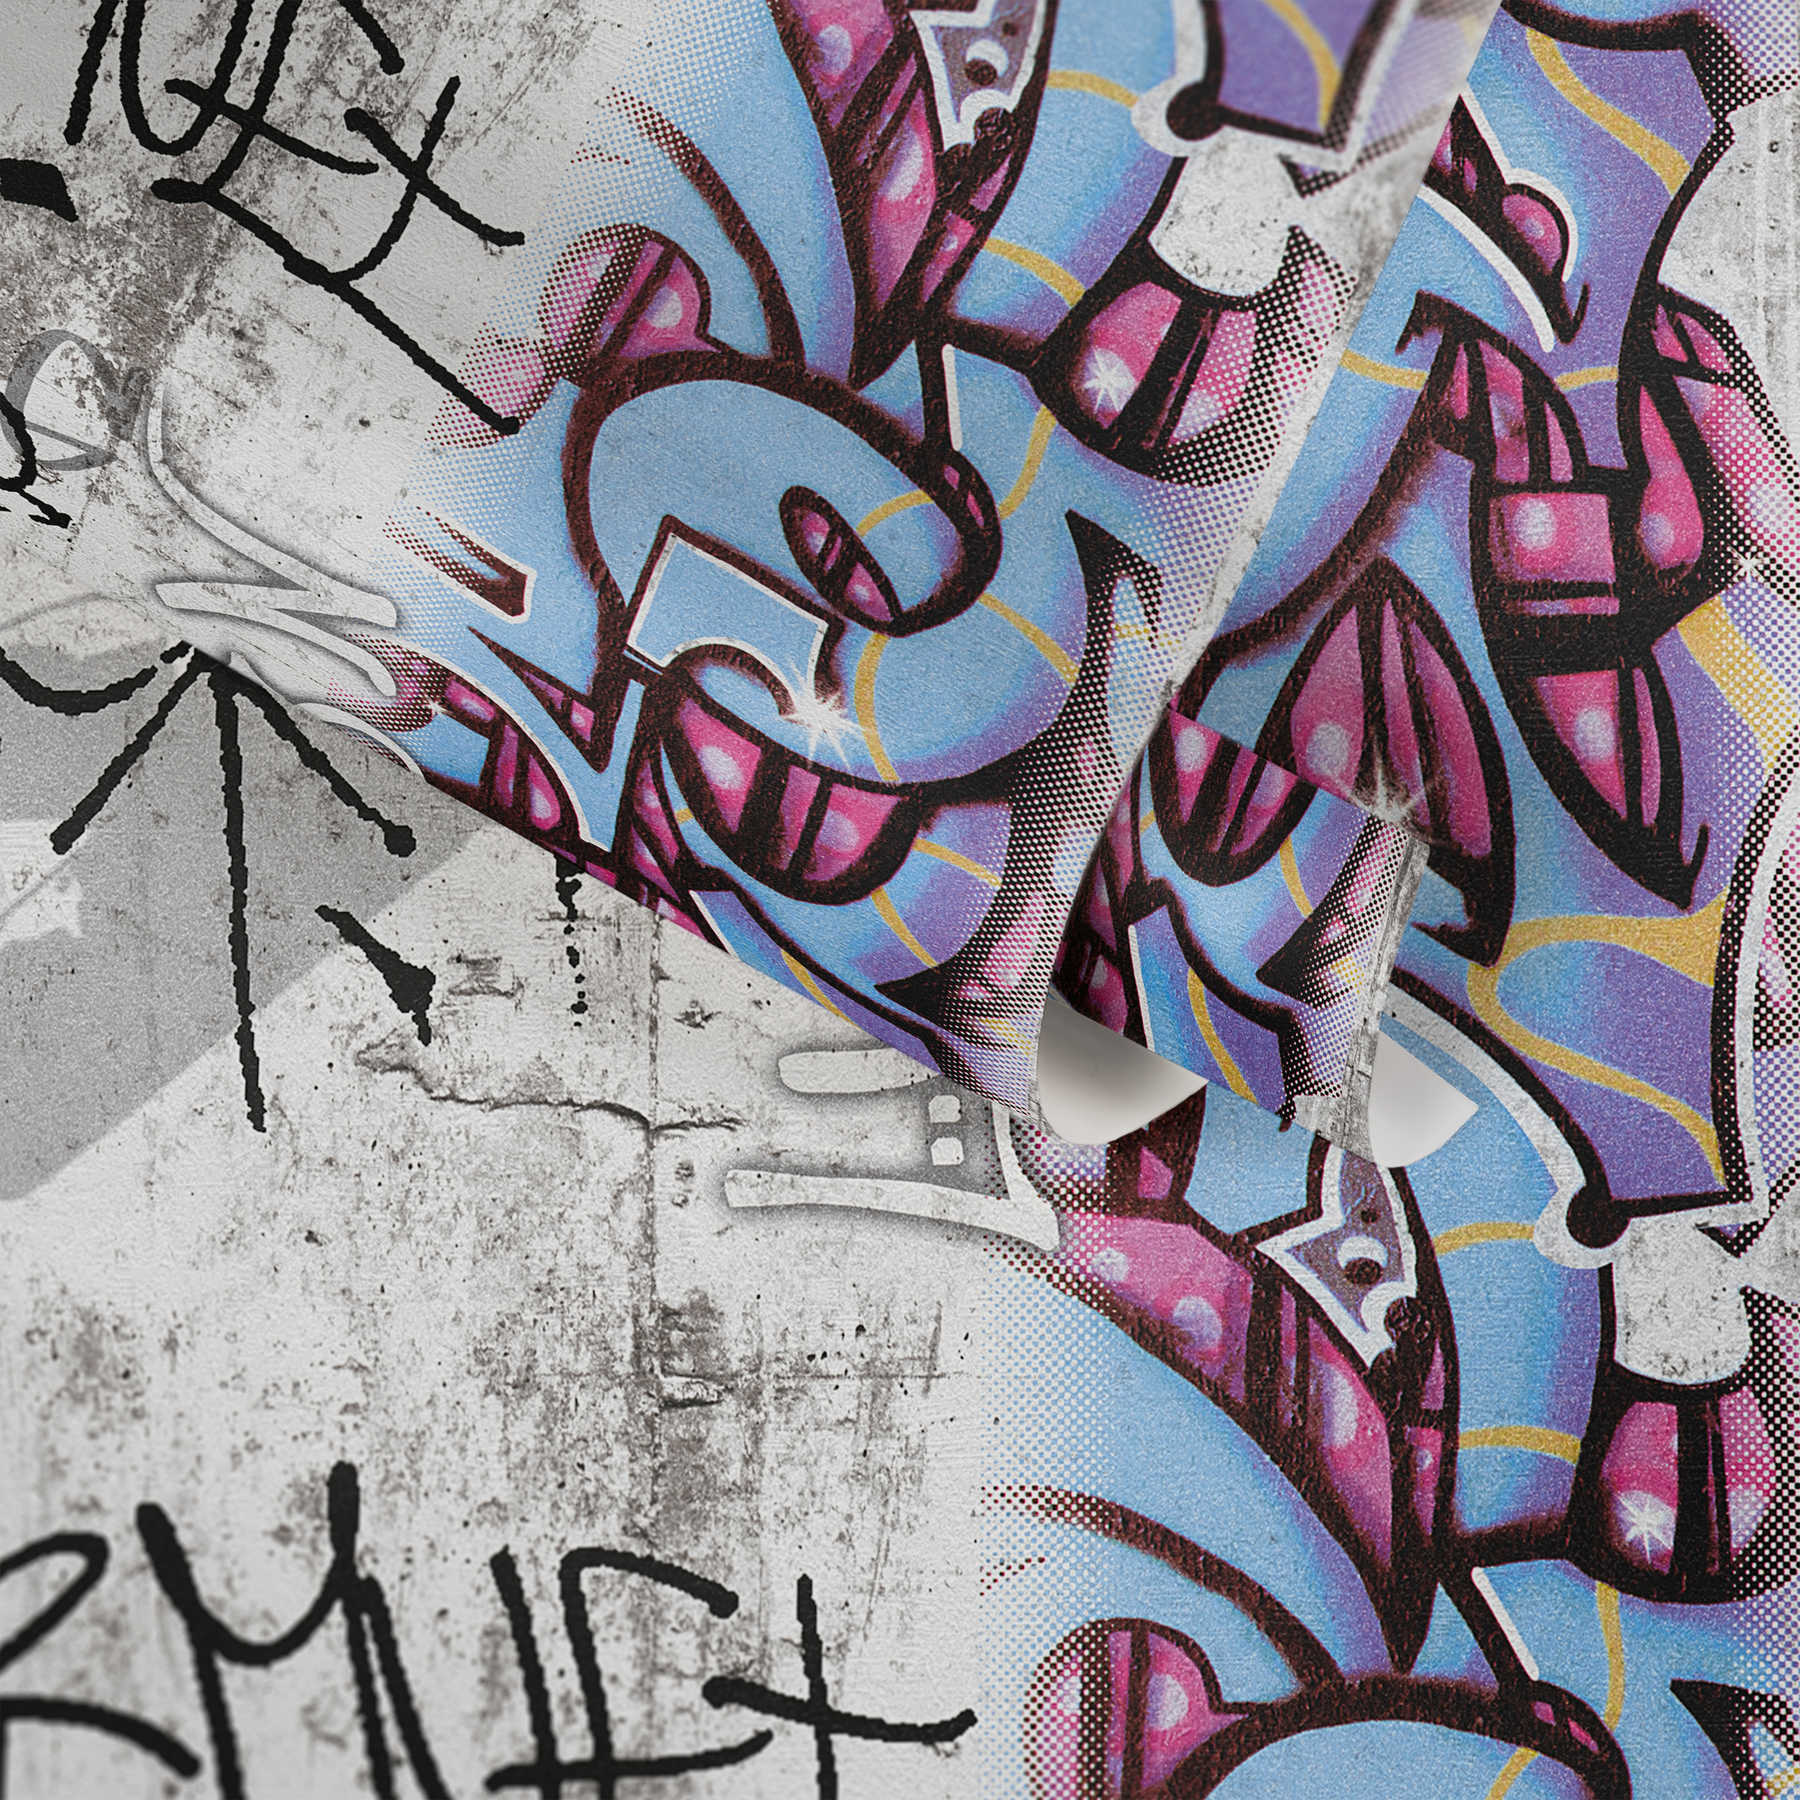             Papier peint graffiti imitation béton & graphisme - gris, bleu
        